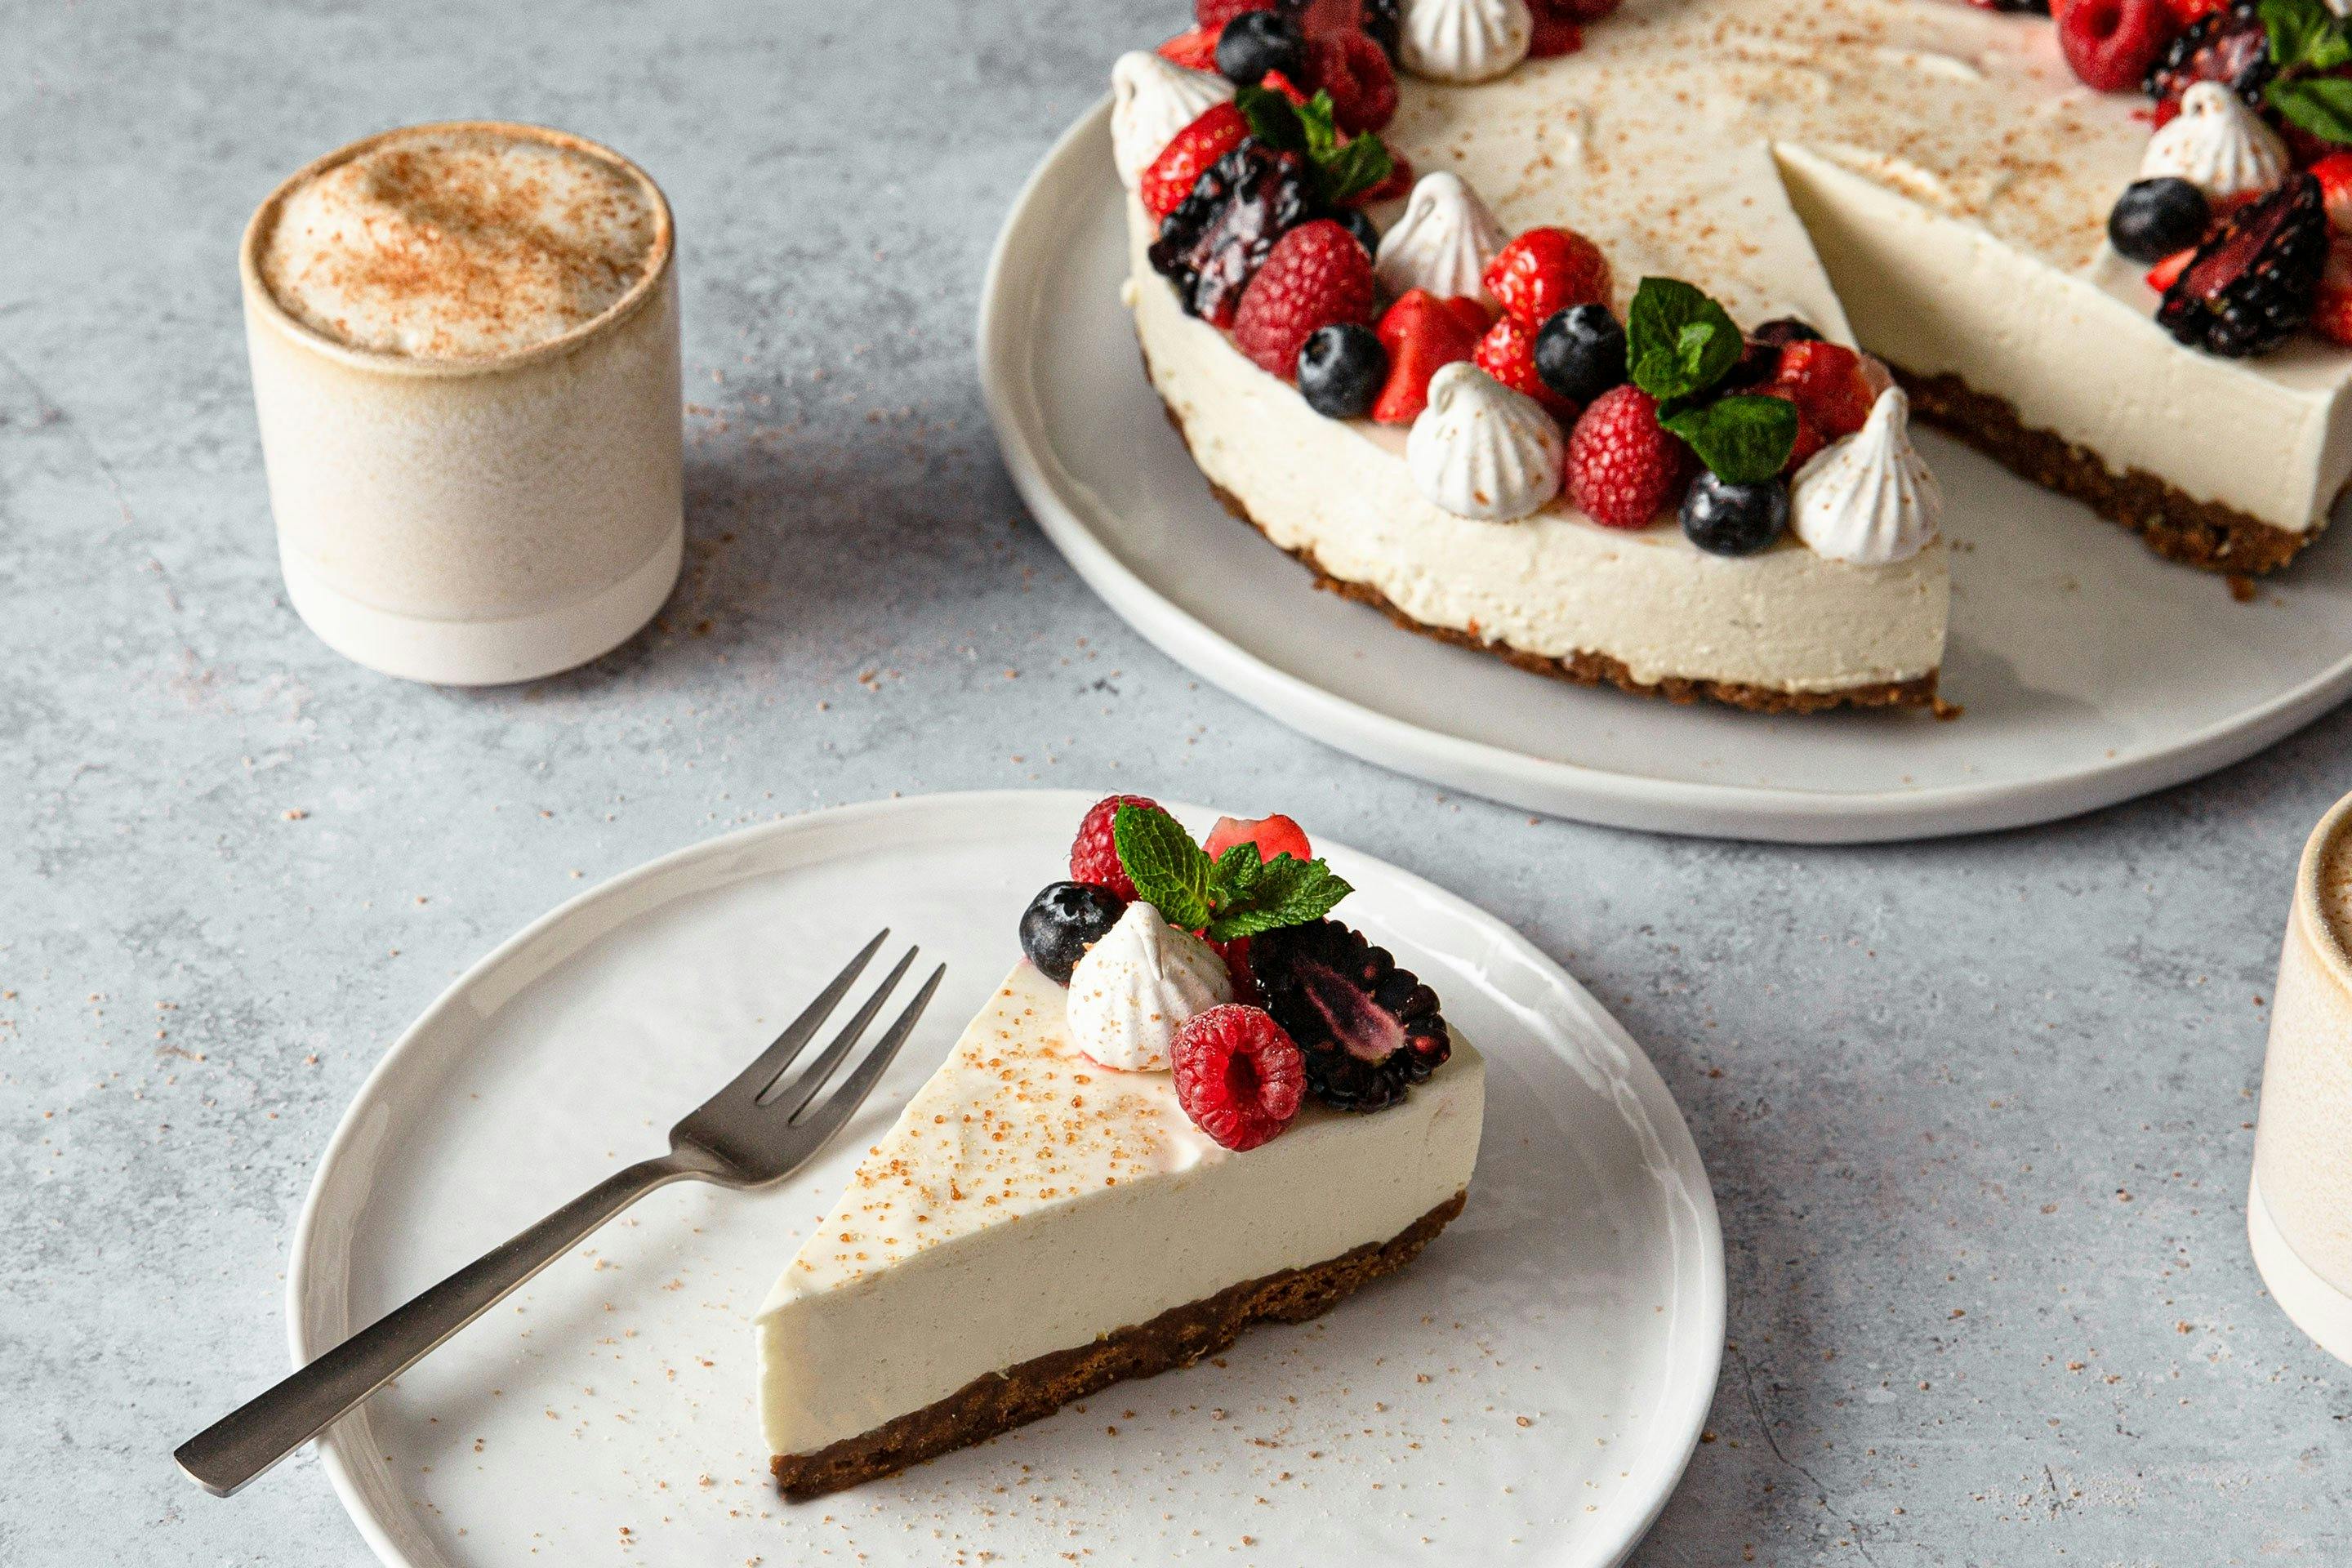 Cheesecake mit frischen Beeren garniert auf einer Kuchenplatte. Im Vordergrund ein Stück Cheesecake auf einem Teller mit Kuchengabell und einem Cappuccino in einem Becher.